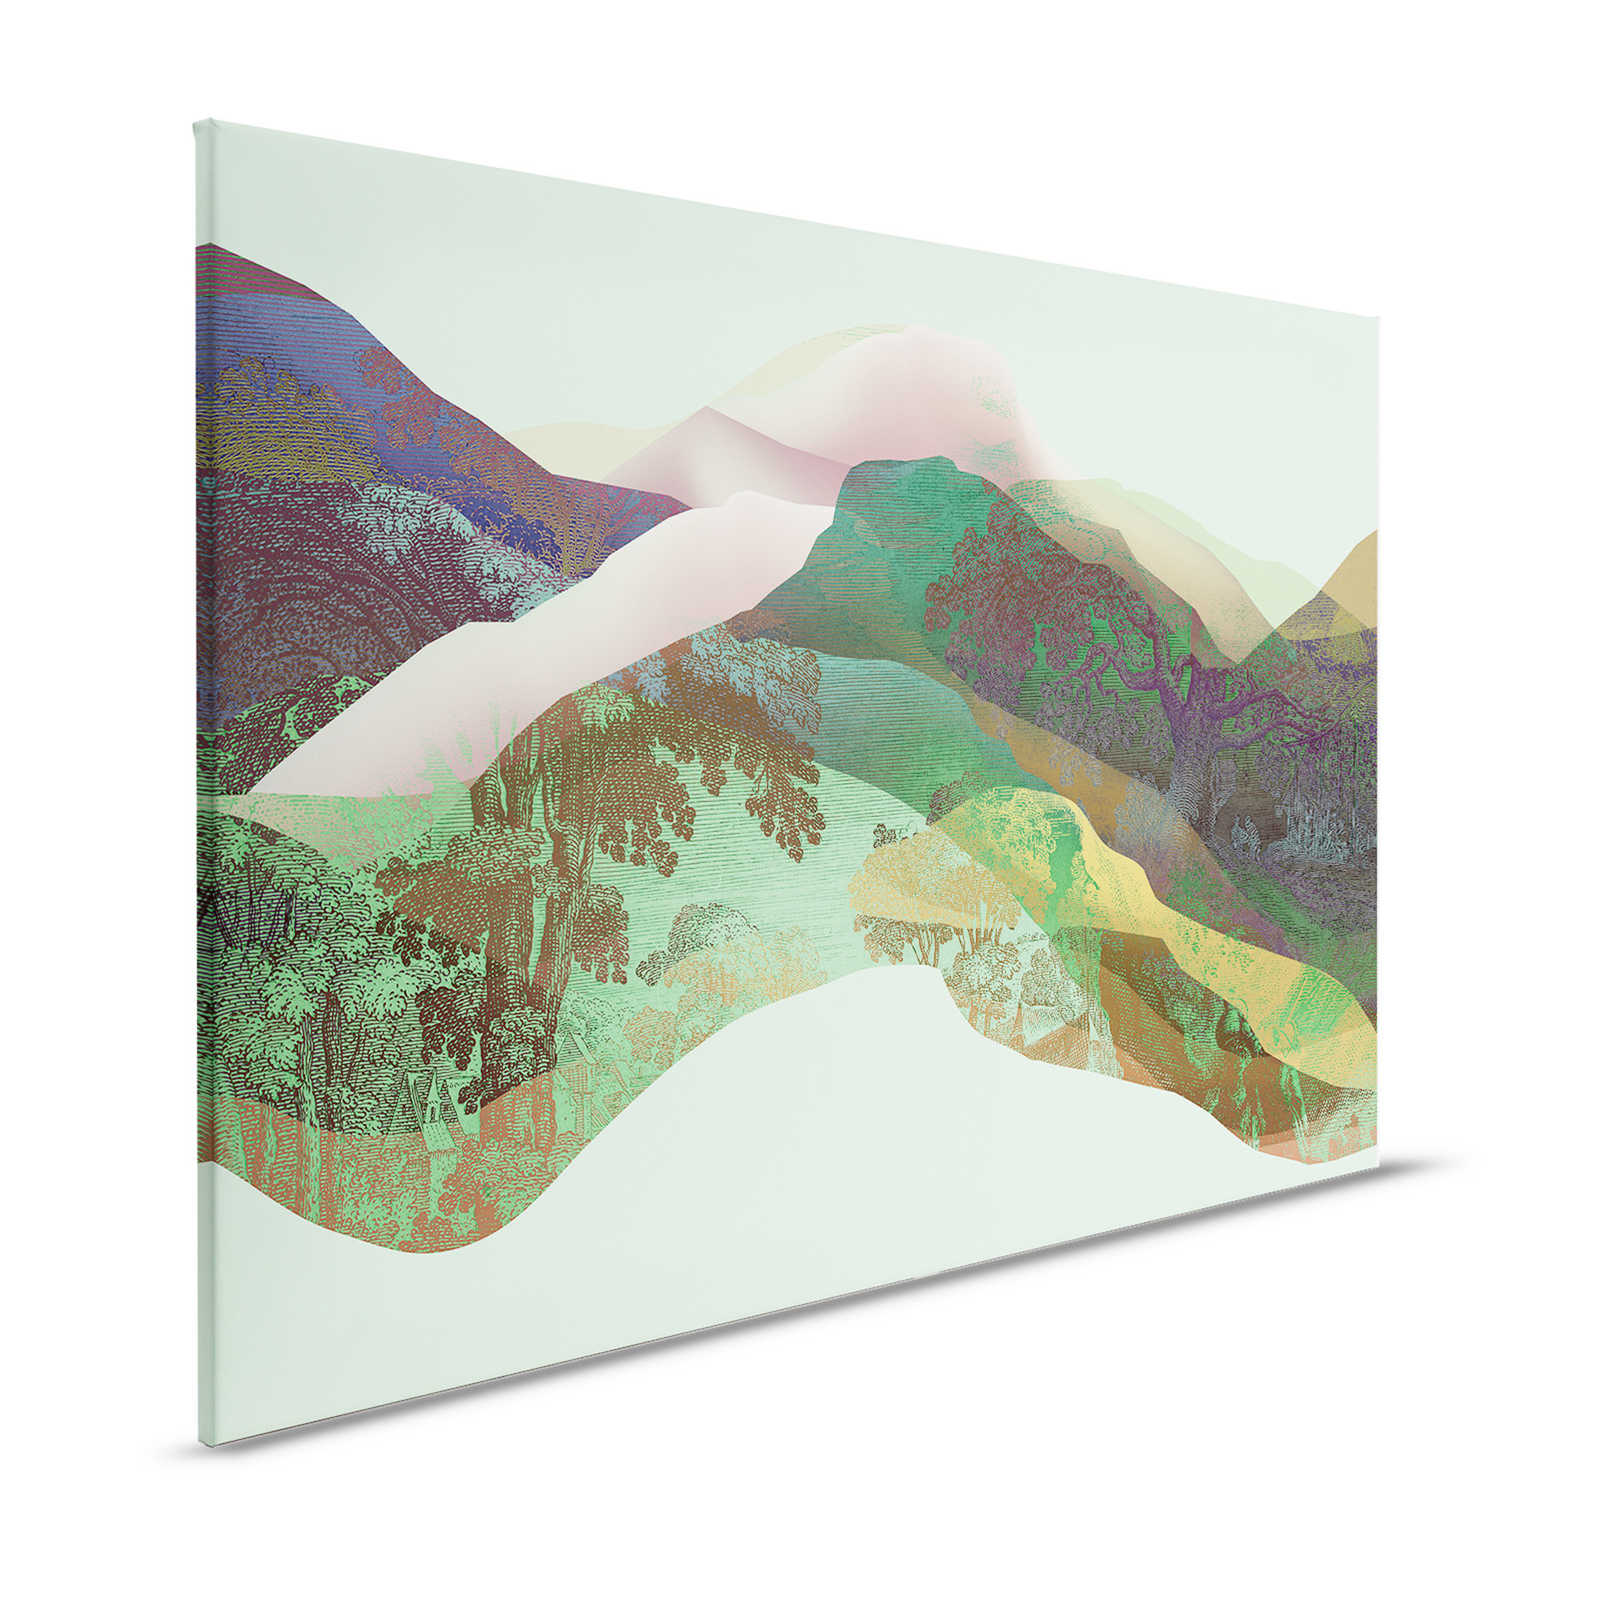 Magic Mountain 3 - Quadro su tela con montagne verdi dal design moderno - 1,20 m x 0,80 m
